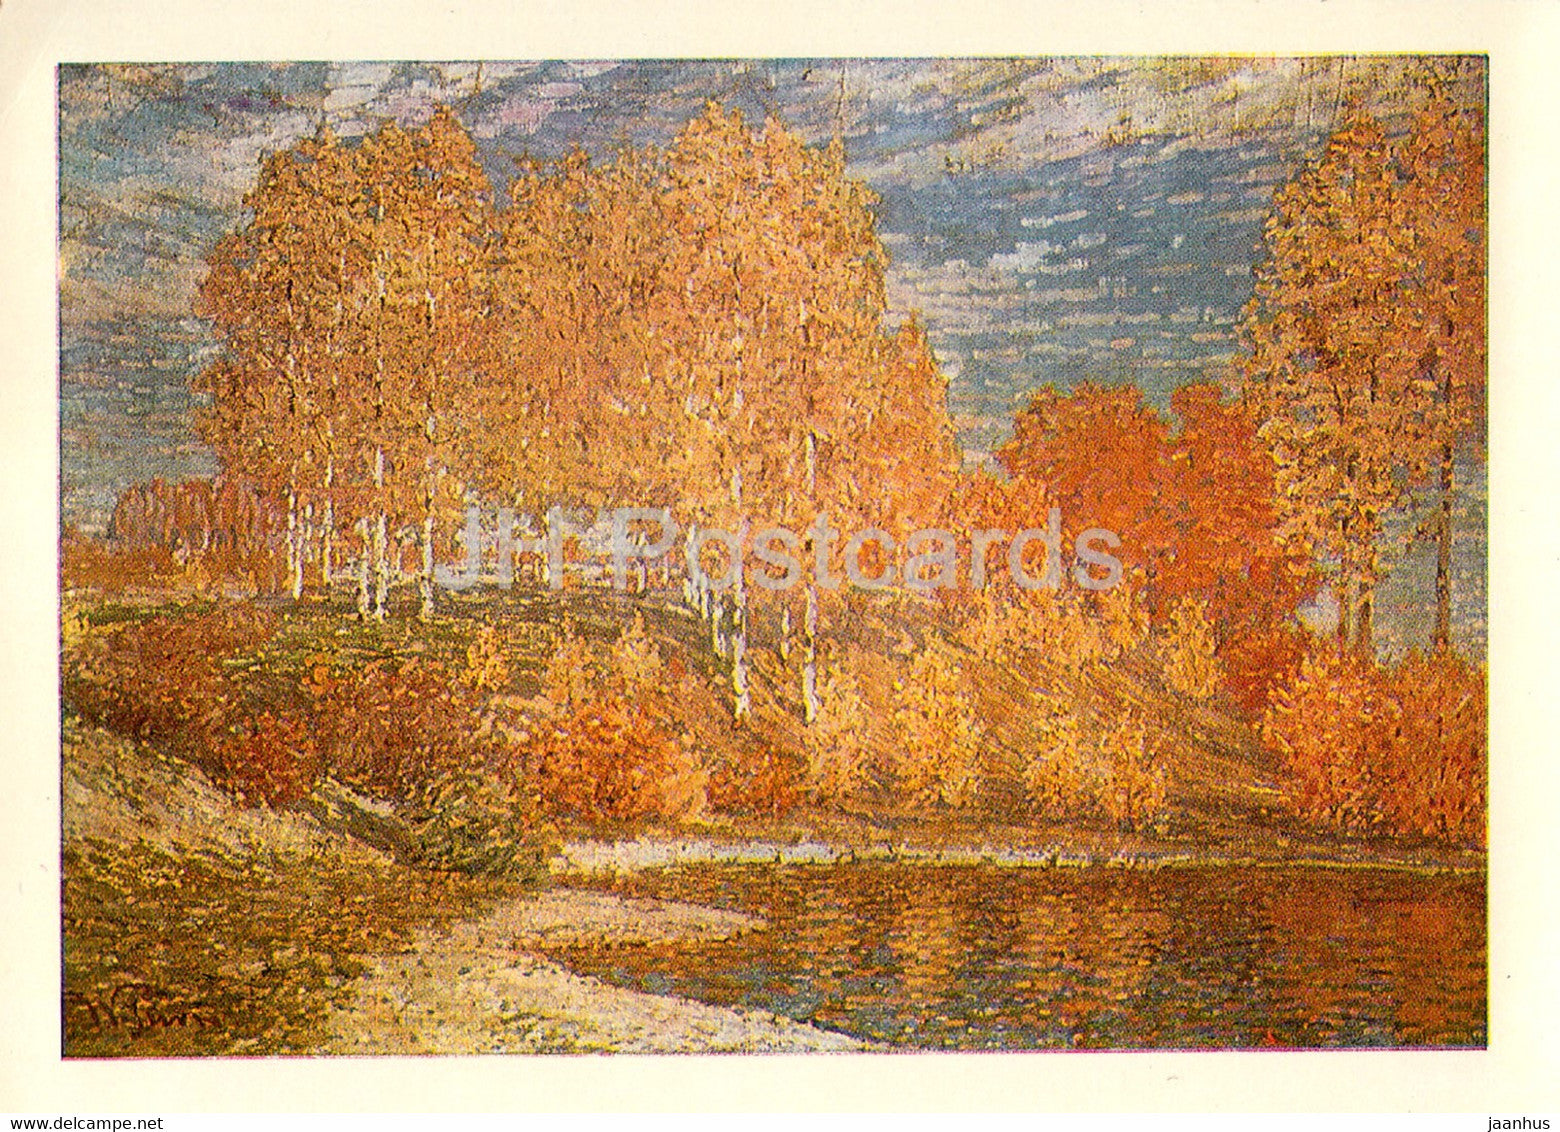 painting by Vilhelms Purvitis - Autumn Sun - Latvian art - Latvia USSR - unused - JH Postcards